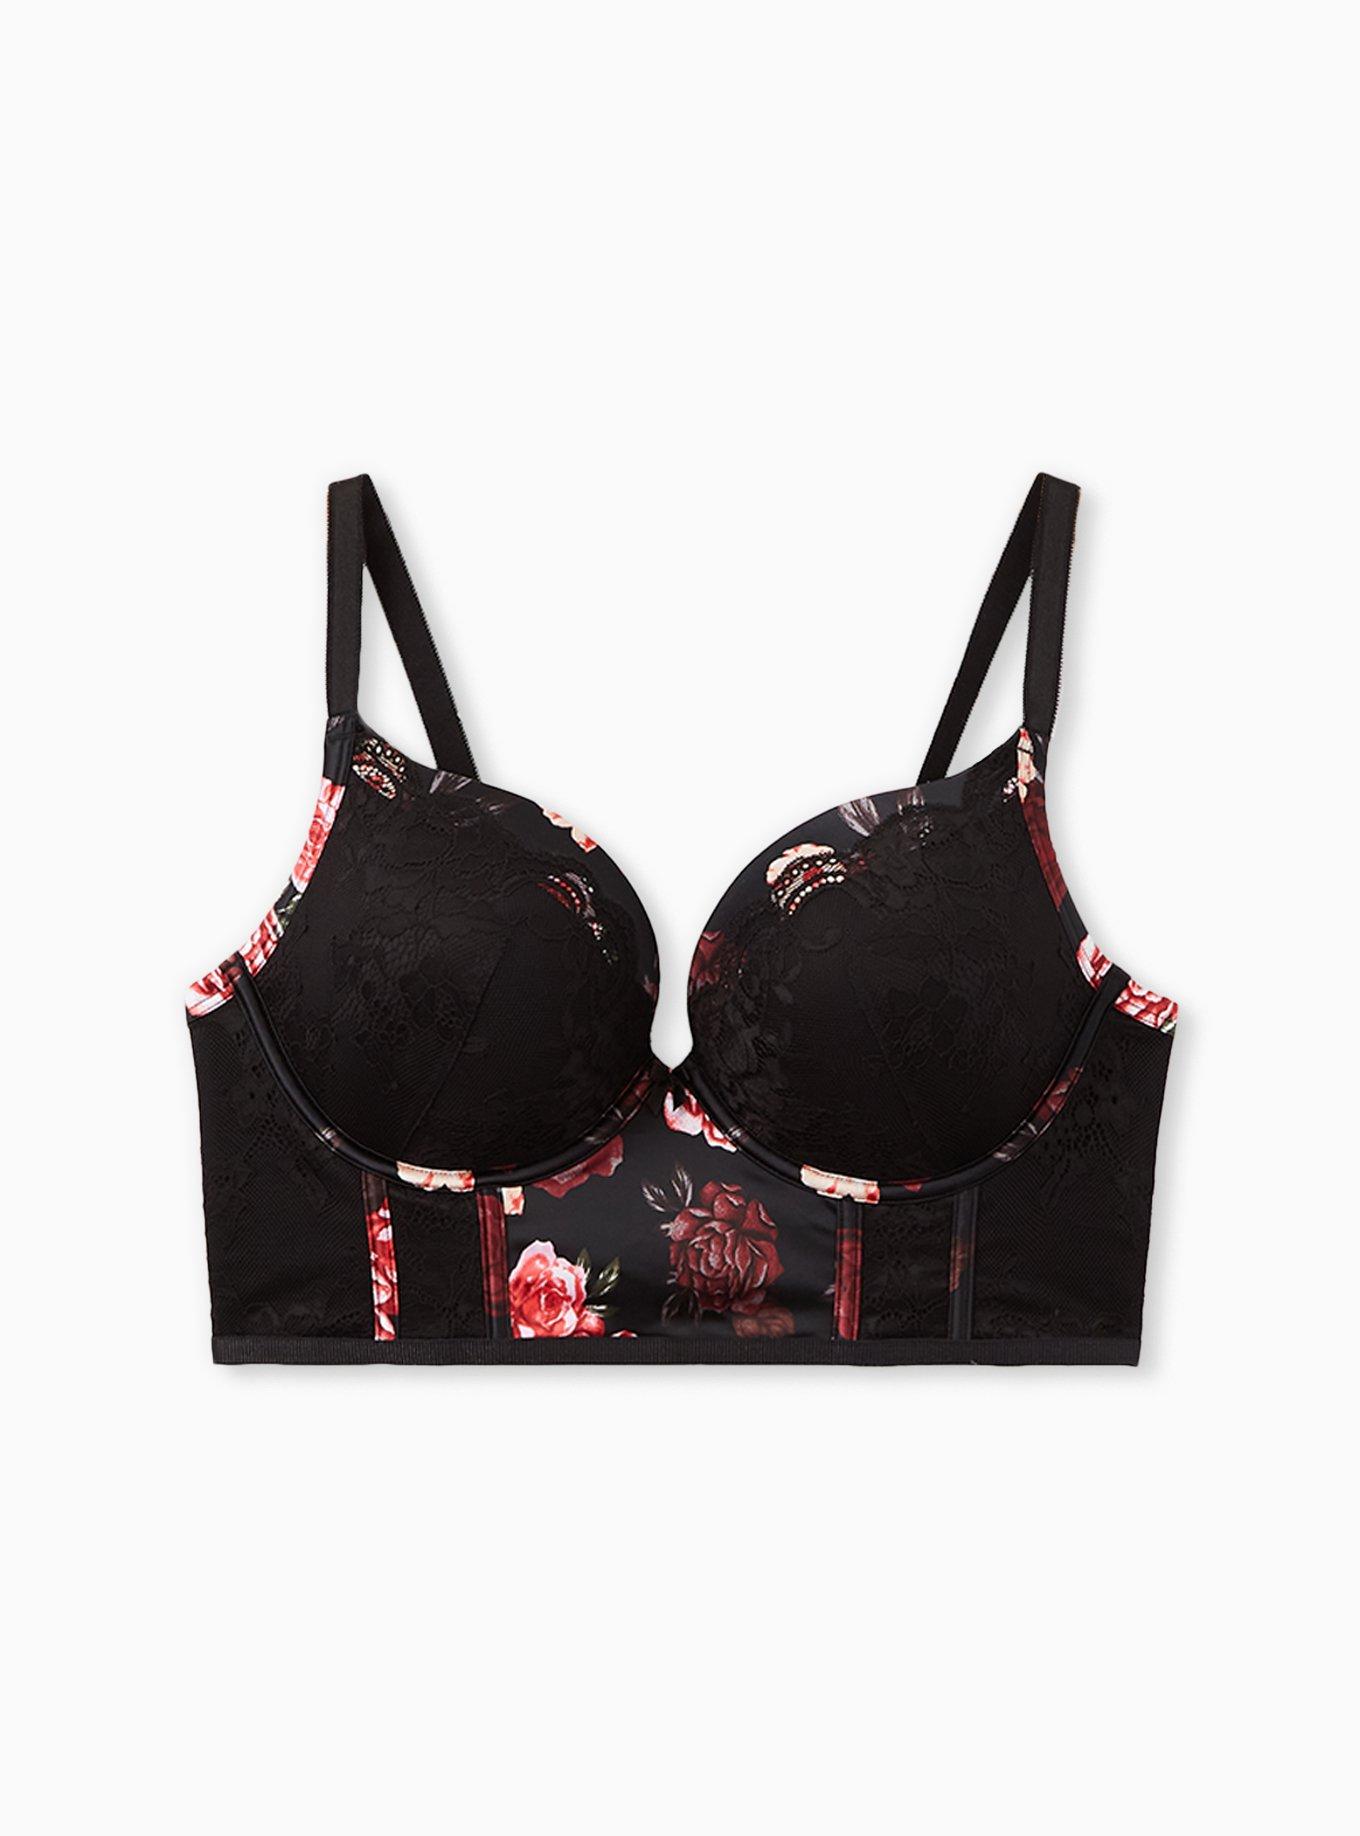 New Victoria's Secret PINK Black Tropical Floral Lace T-Back Push Up  Bralette S